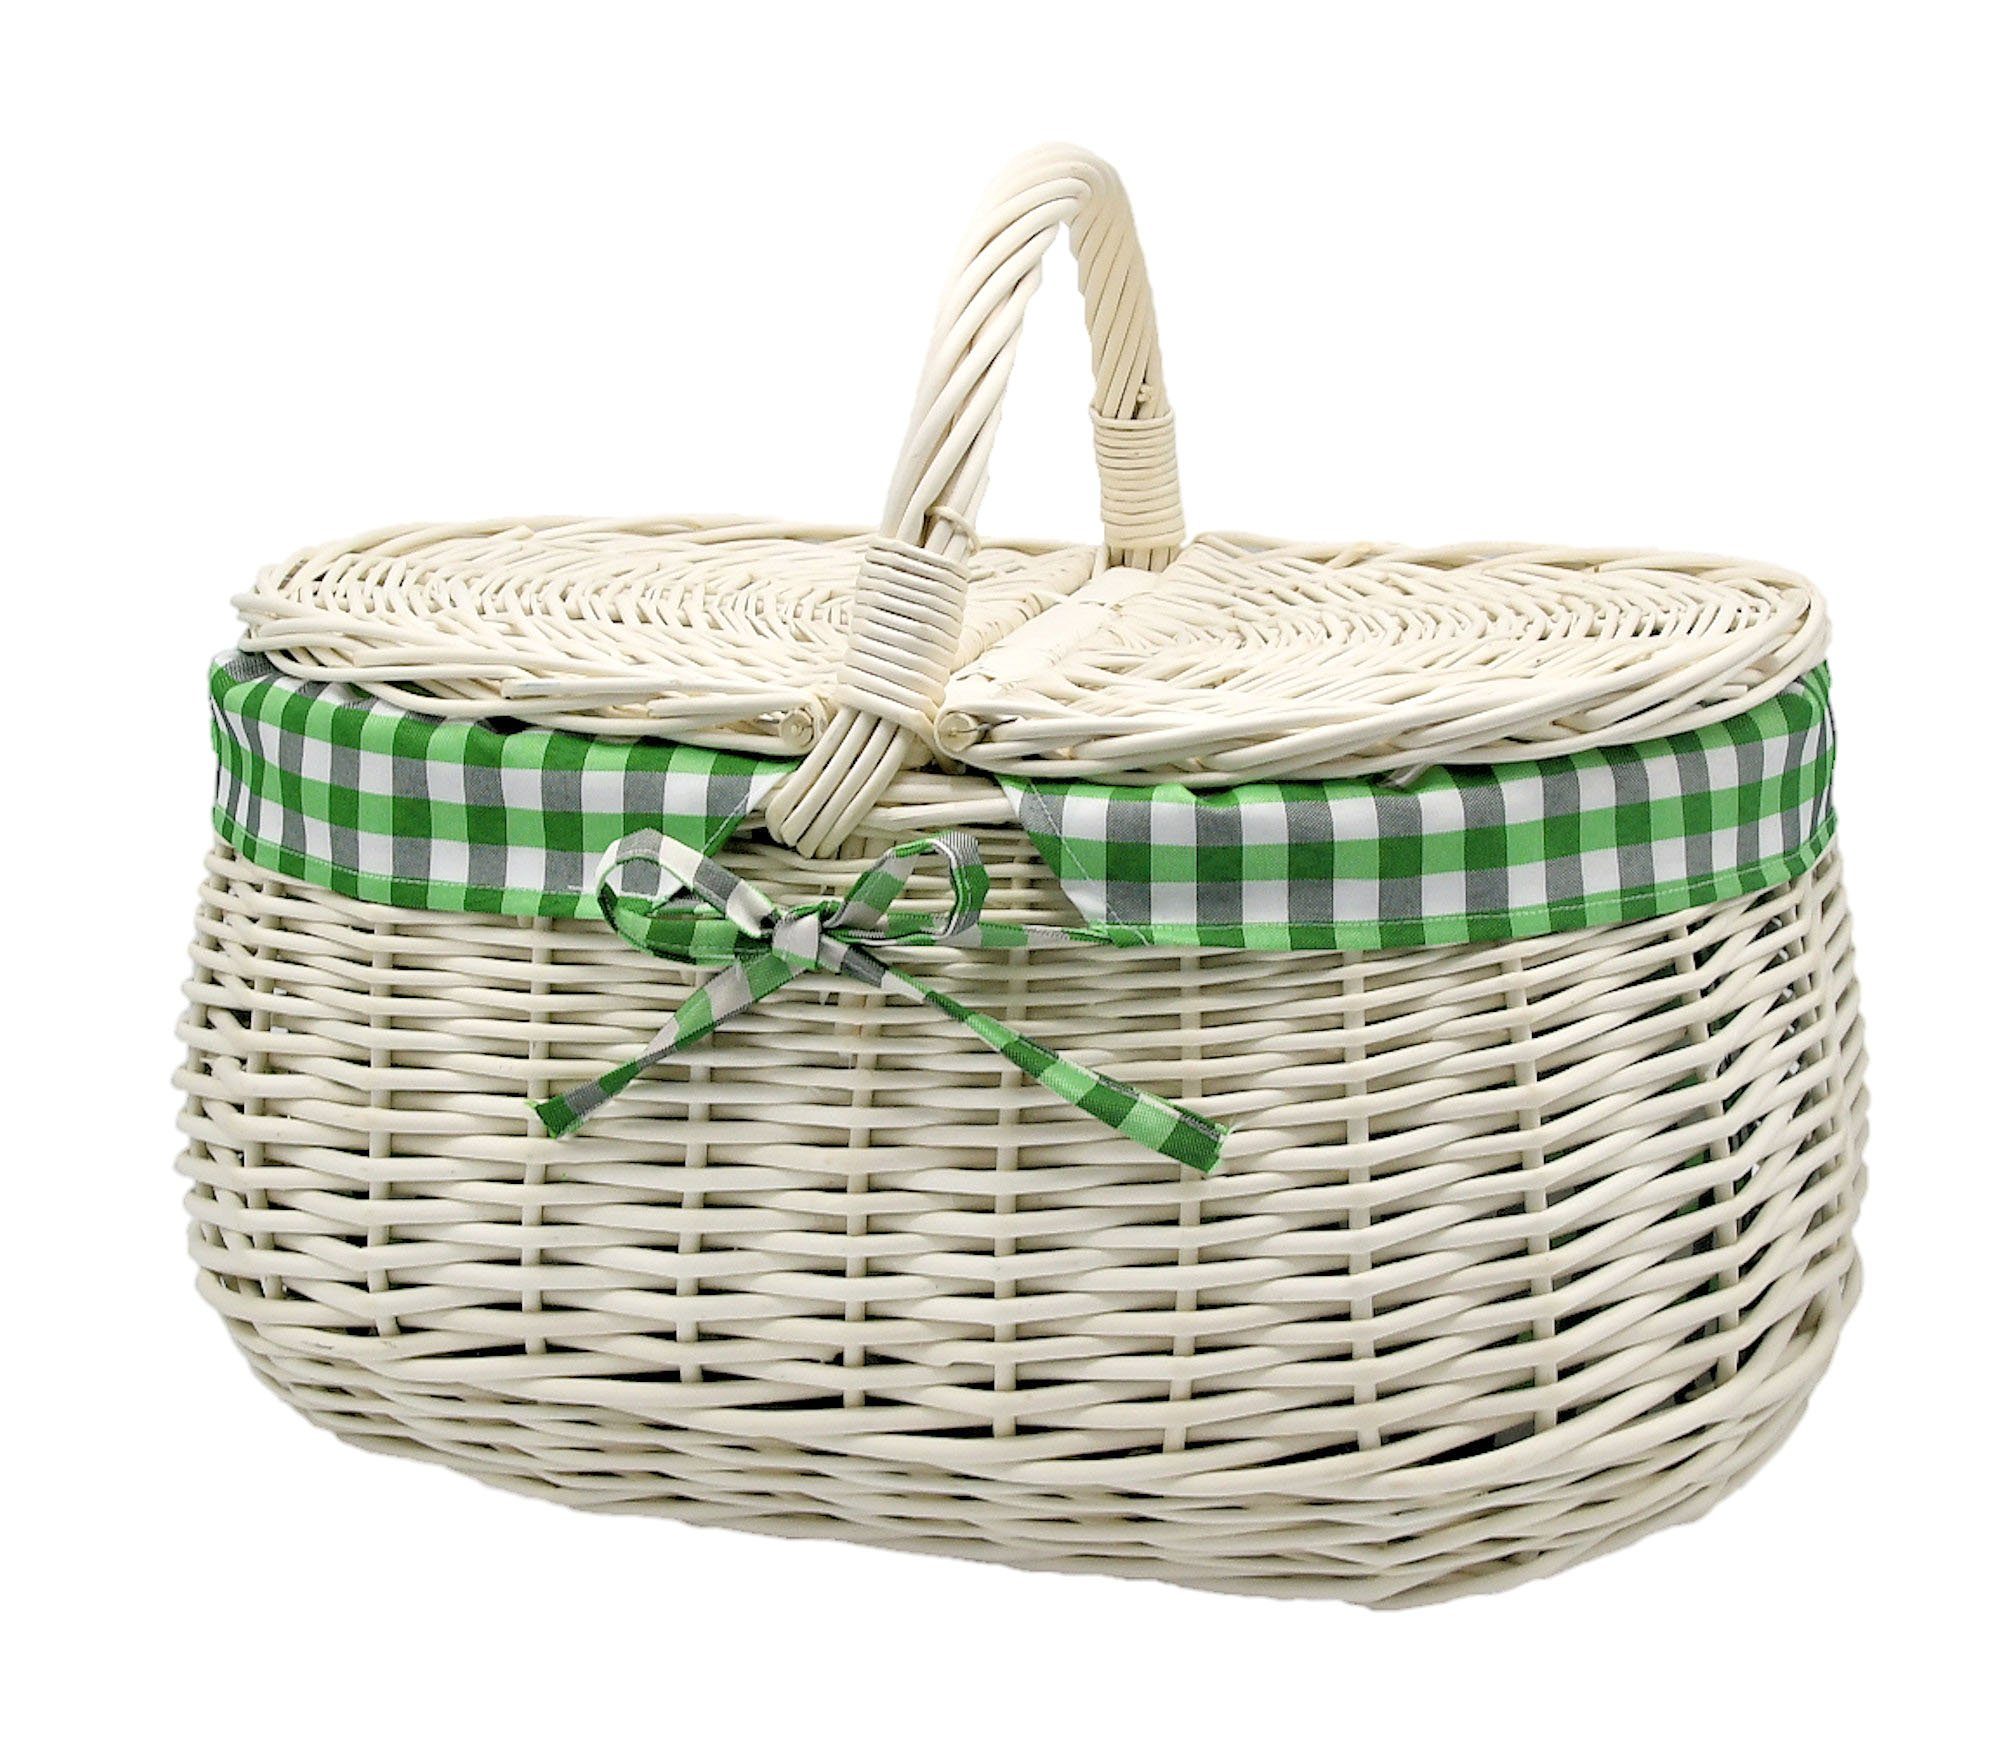 MyBer® Einkaufskorb Weidenkorb Korb Picknickorb Stabiler Tragekorb mit 2 Deckeln aus Weide geflochten